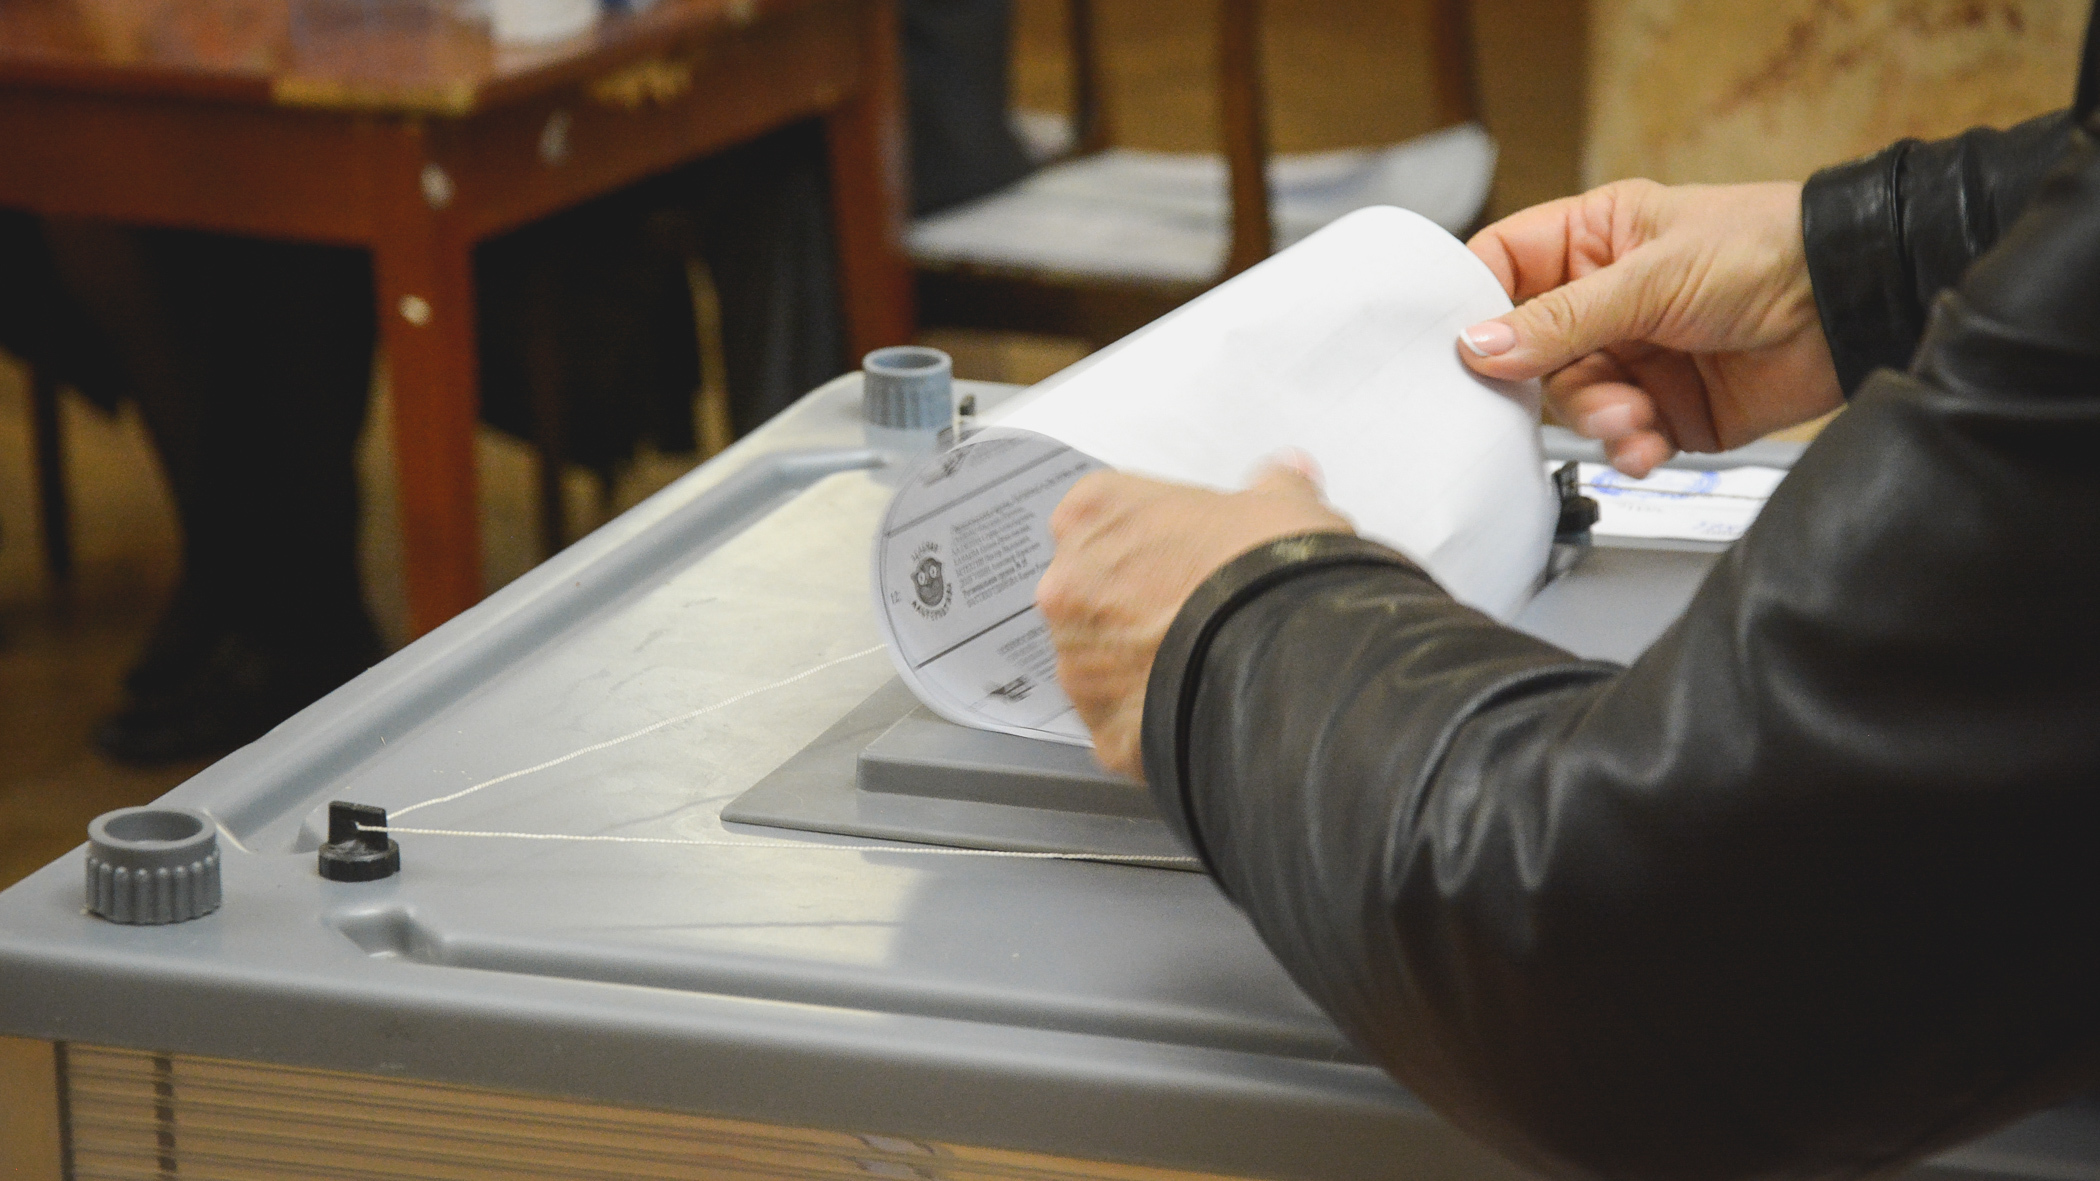 Как узнать номер своего избирательного участка — инструкция